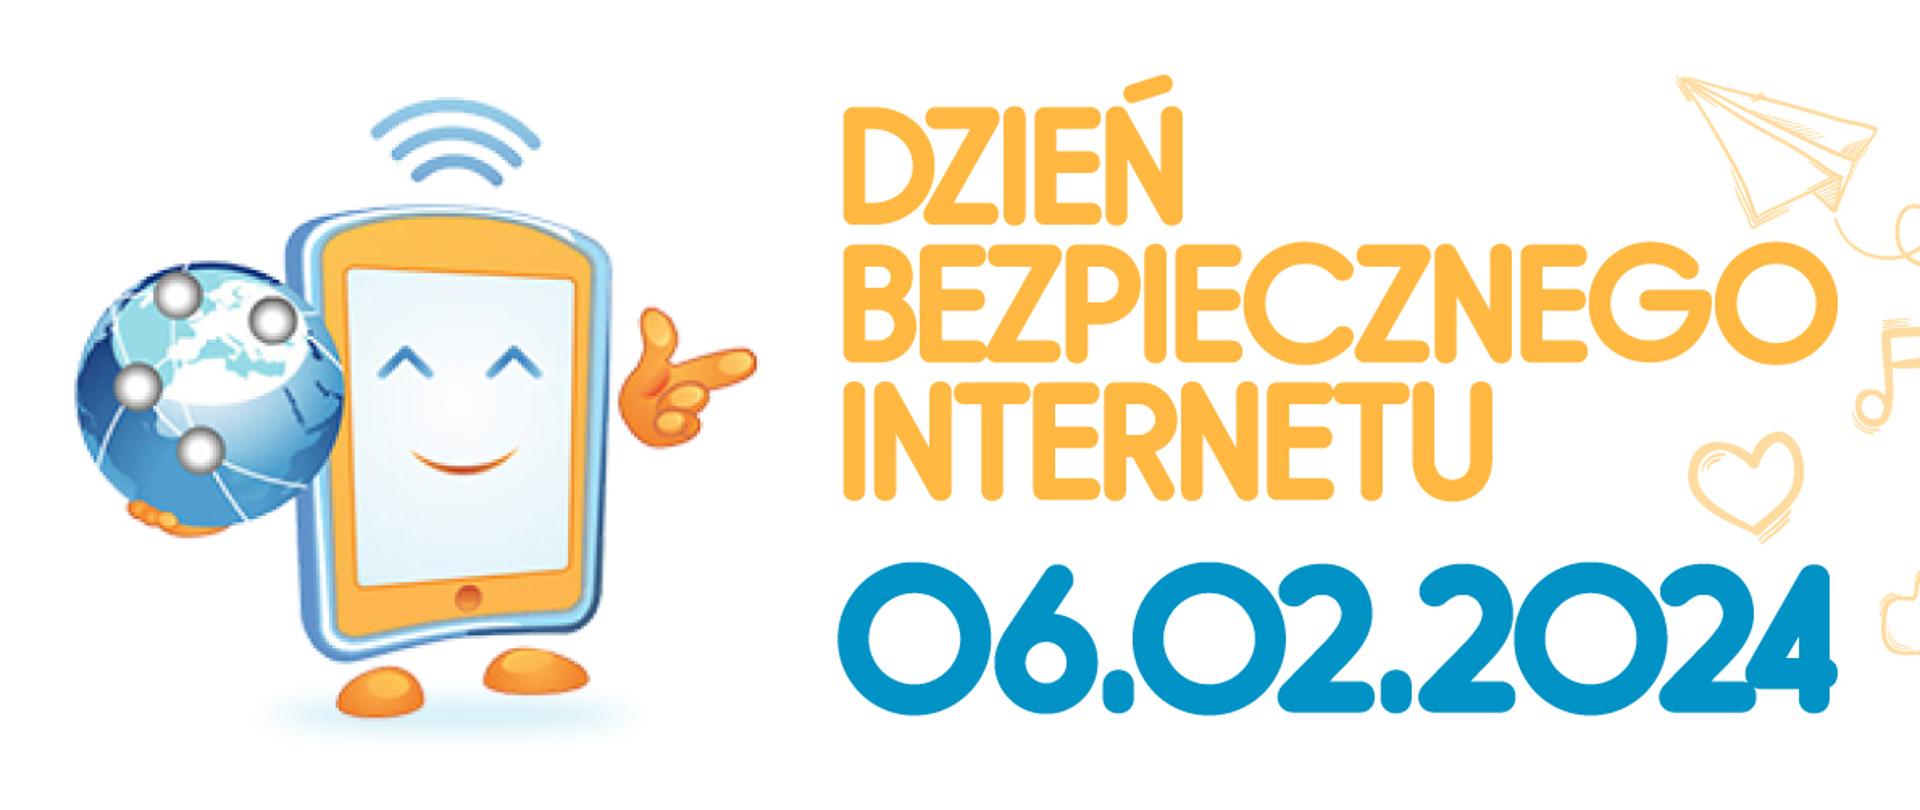 Na białym tle pomarańczowy i granatowy napis Dzień bezpiecznego Internetu 06.02.2024. Po lewej stronie stojąca rysunkowa postać stworzona na wzór telefonu komórkowego, uśmiechającą się i trzymająca w ręku kulę ziemską.